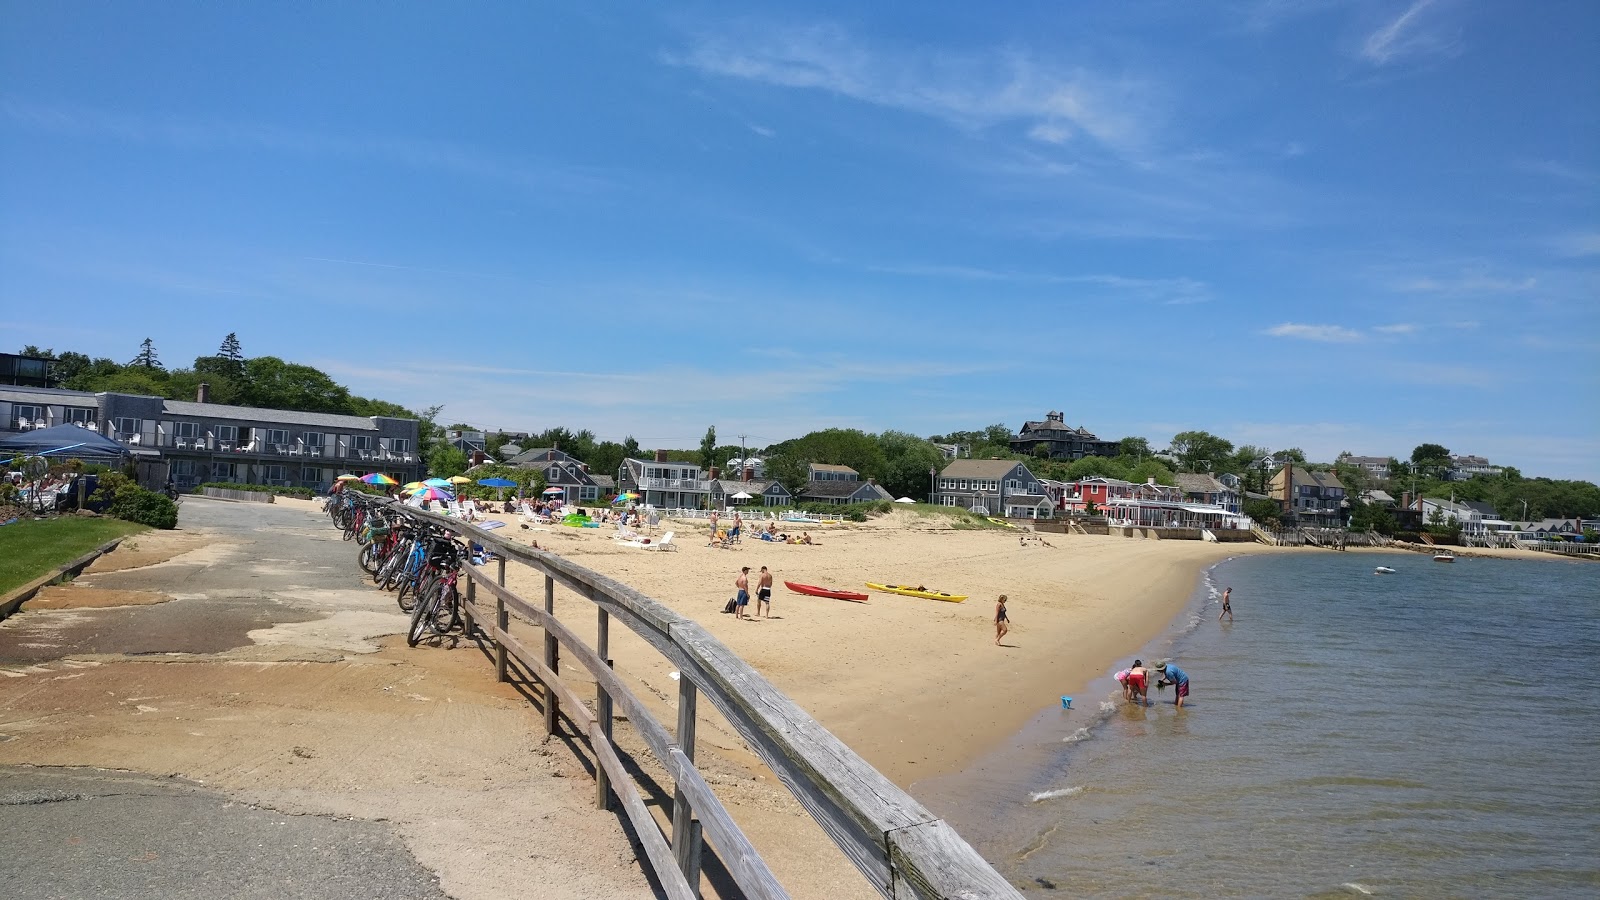 Zdjęcie Provincetown beach z powierzchnią jasny piasek